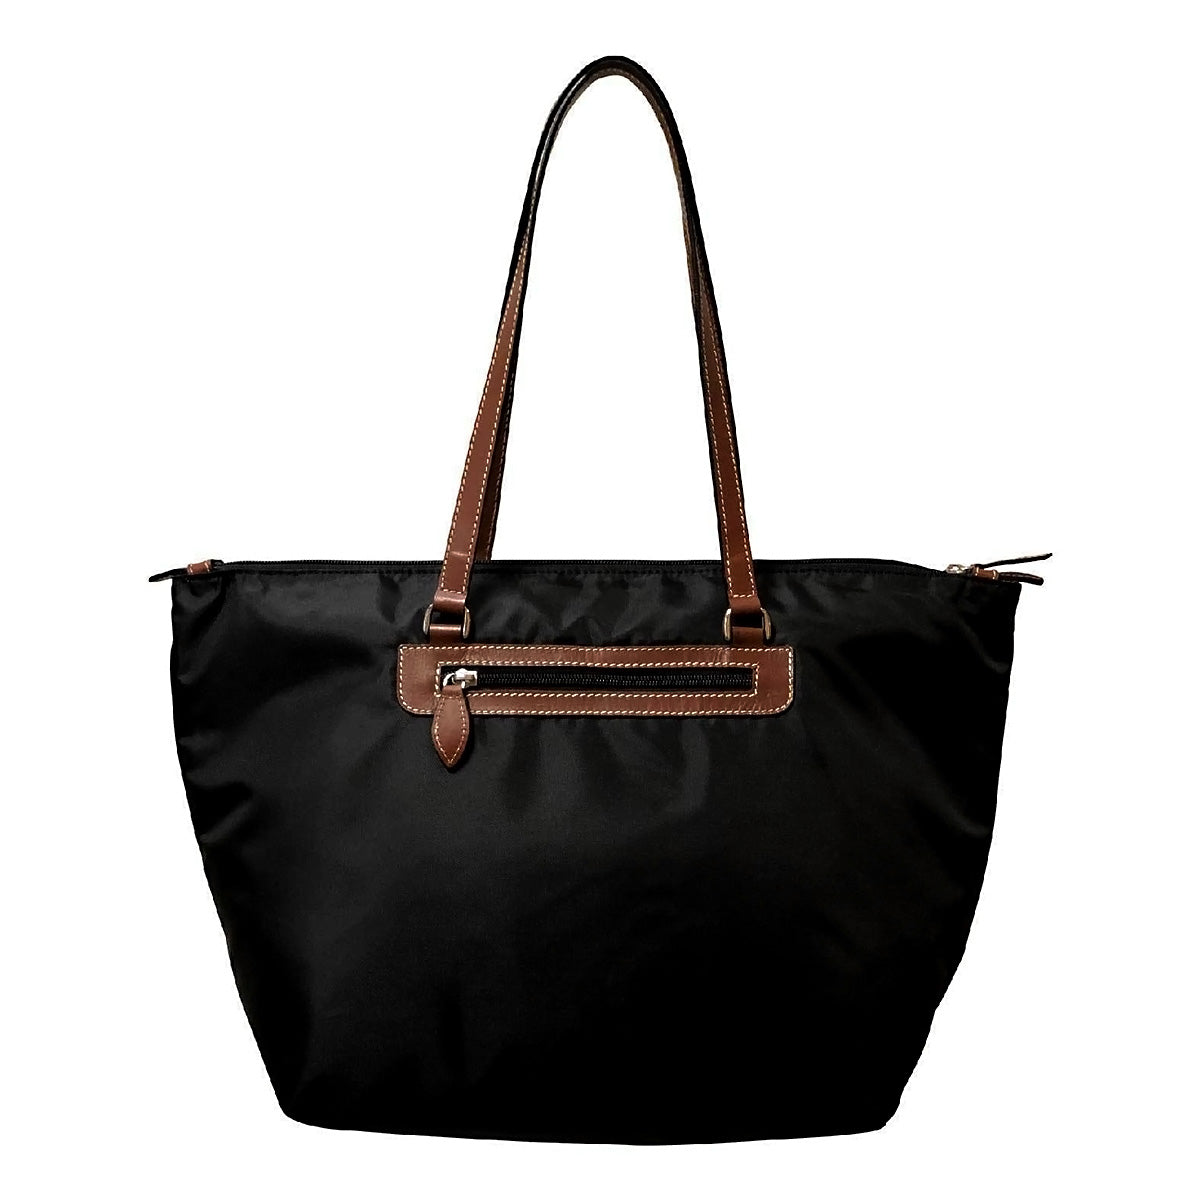 Devon Soft' shoulder bag Rucks BOYY - IetpShops Denmark - Estelle Novelty  Backpack